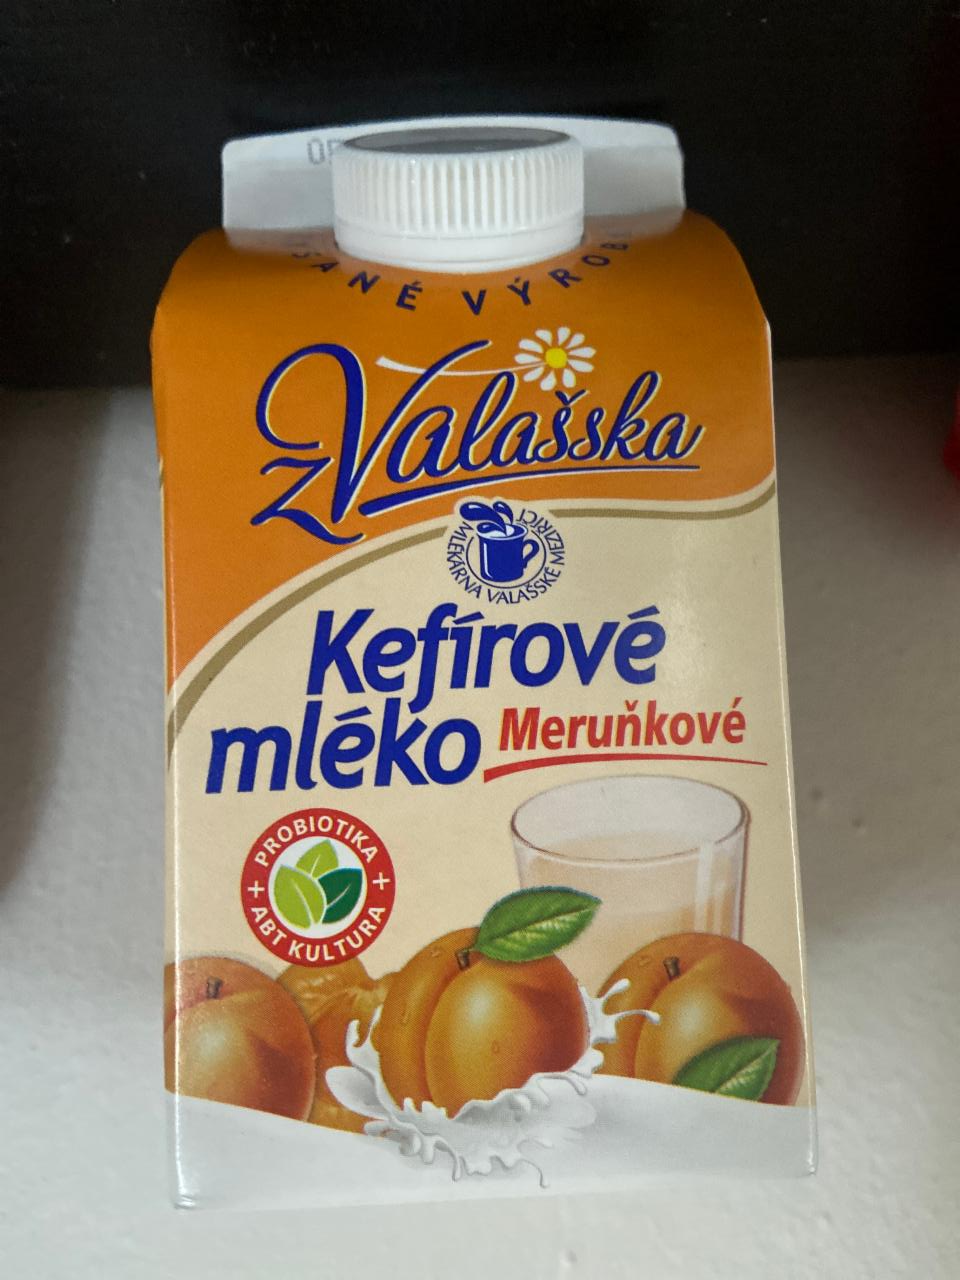 Фото - Kefirove mléko Meruňkove Valašska